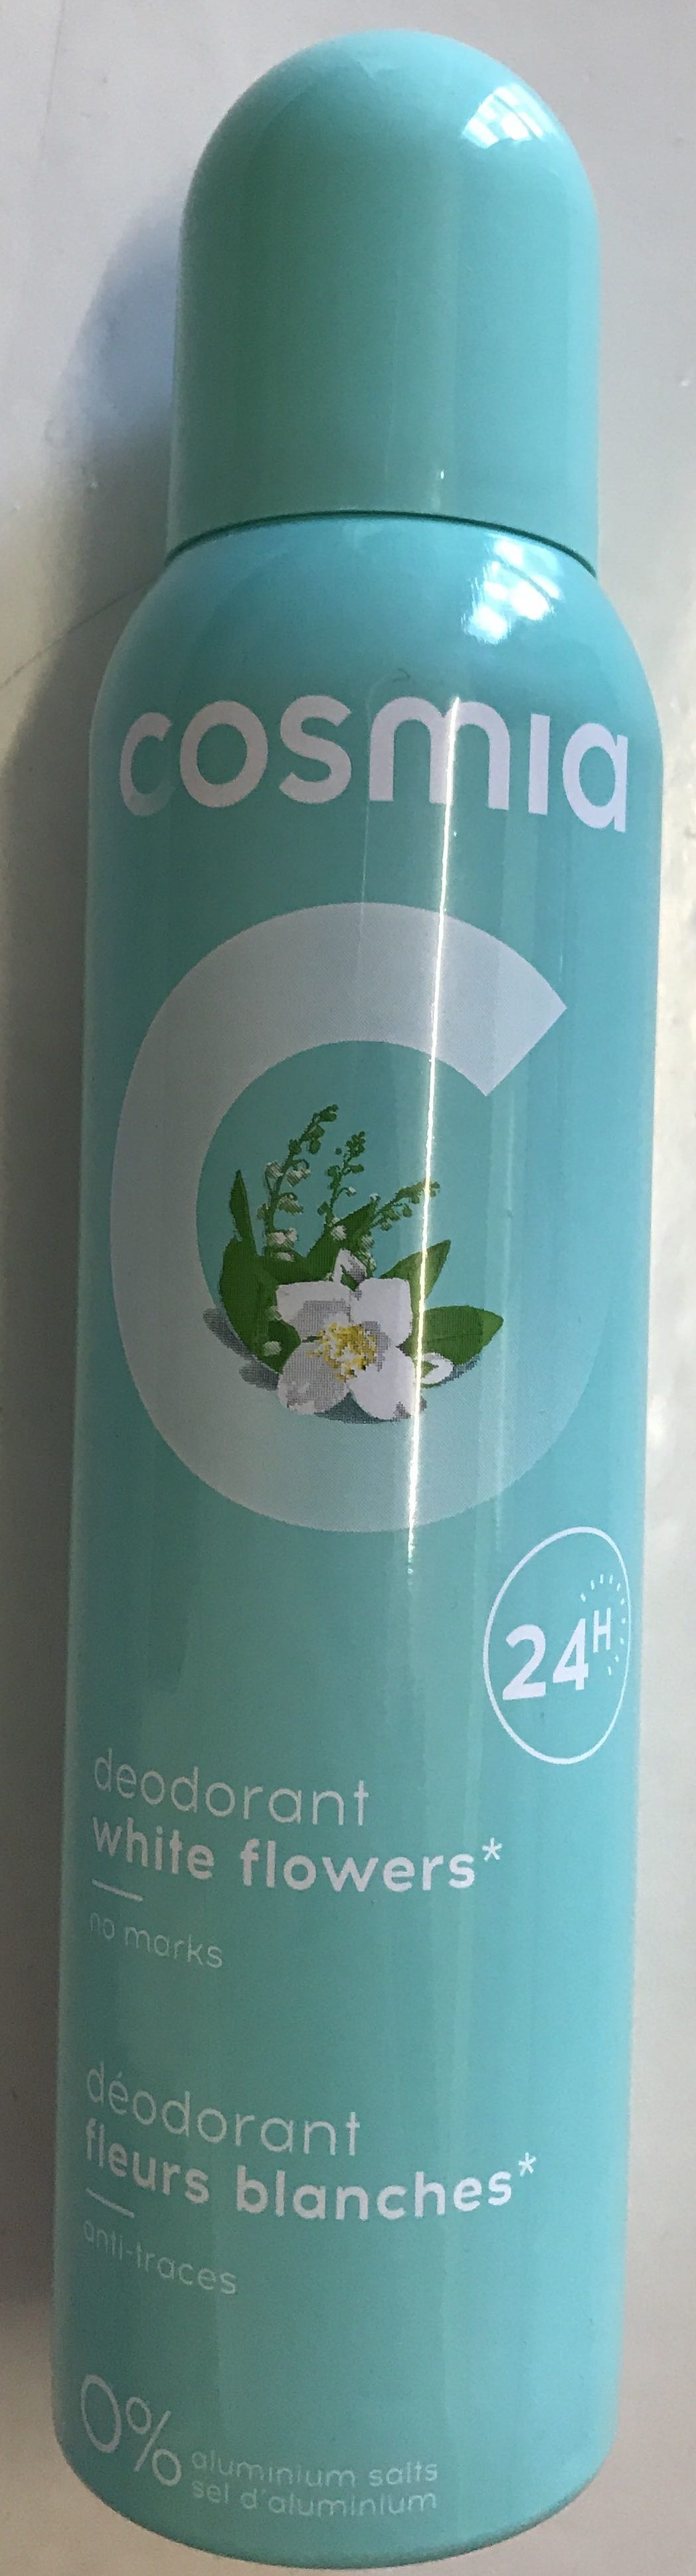 Déodorant fleurs blanches 24H - Produit - fr